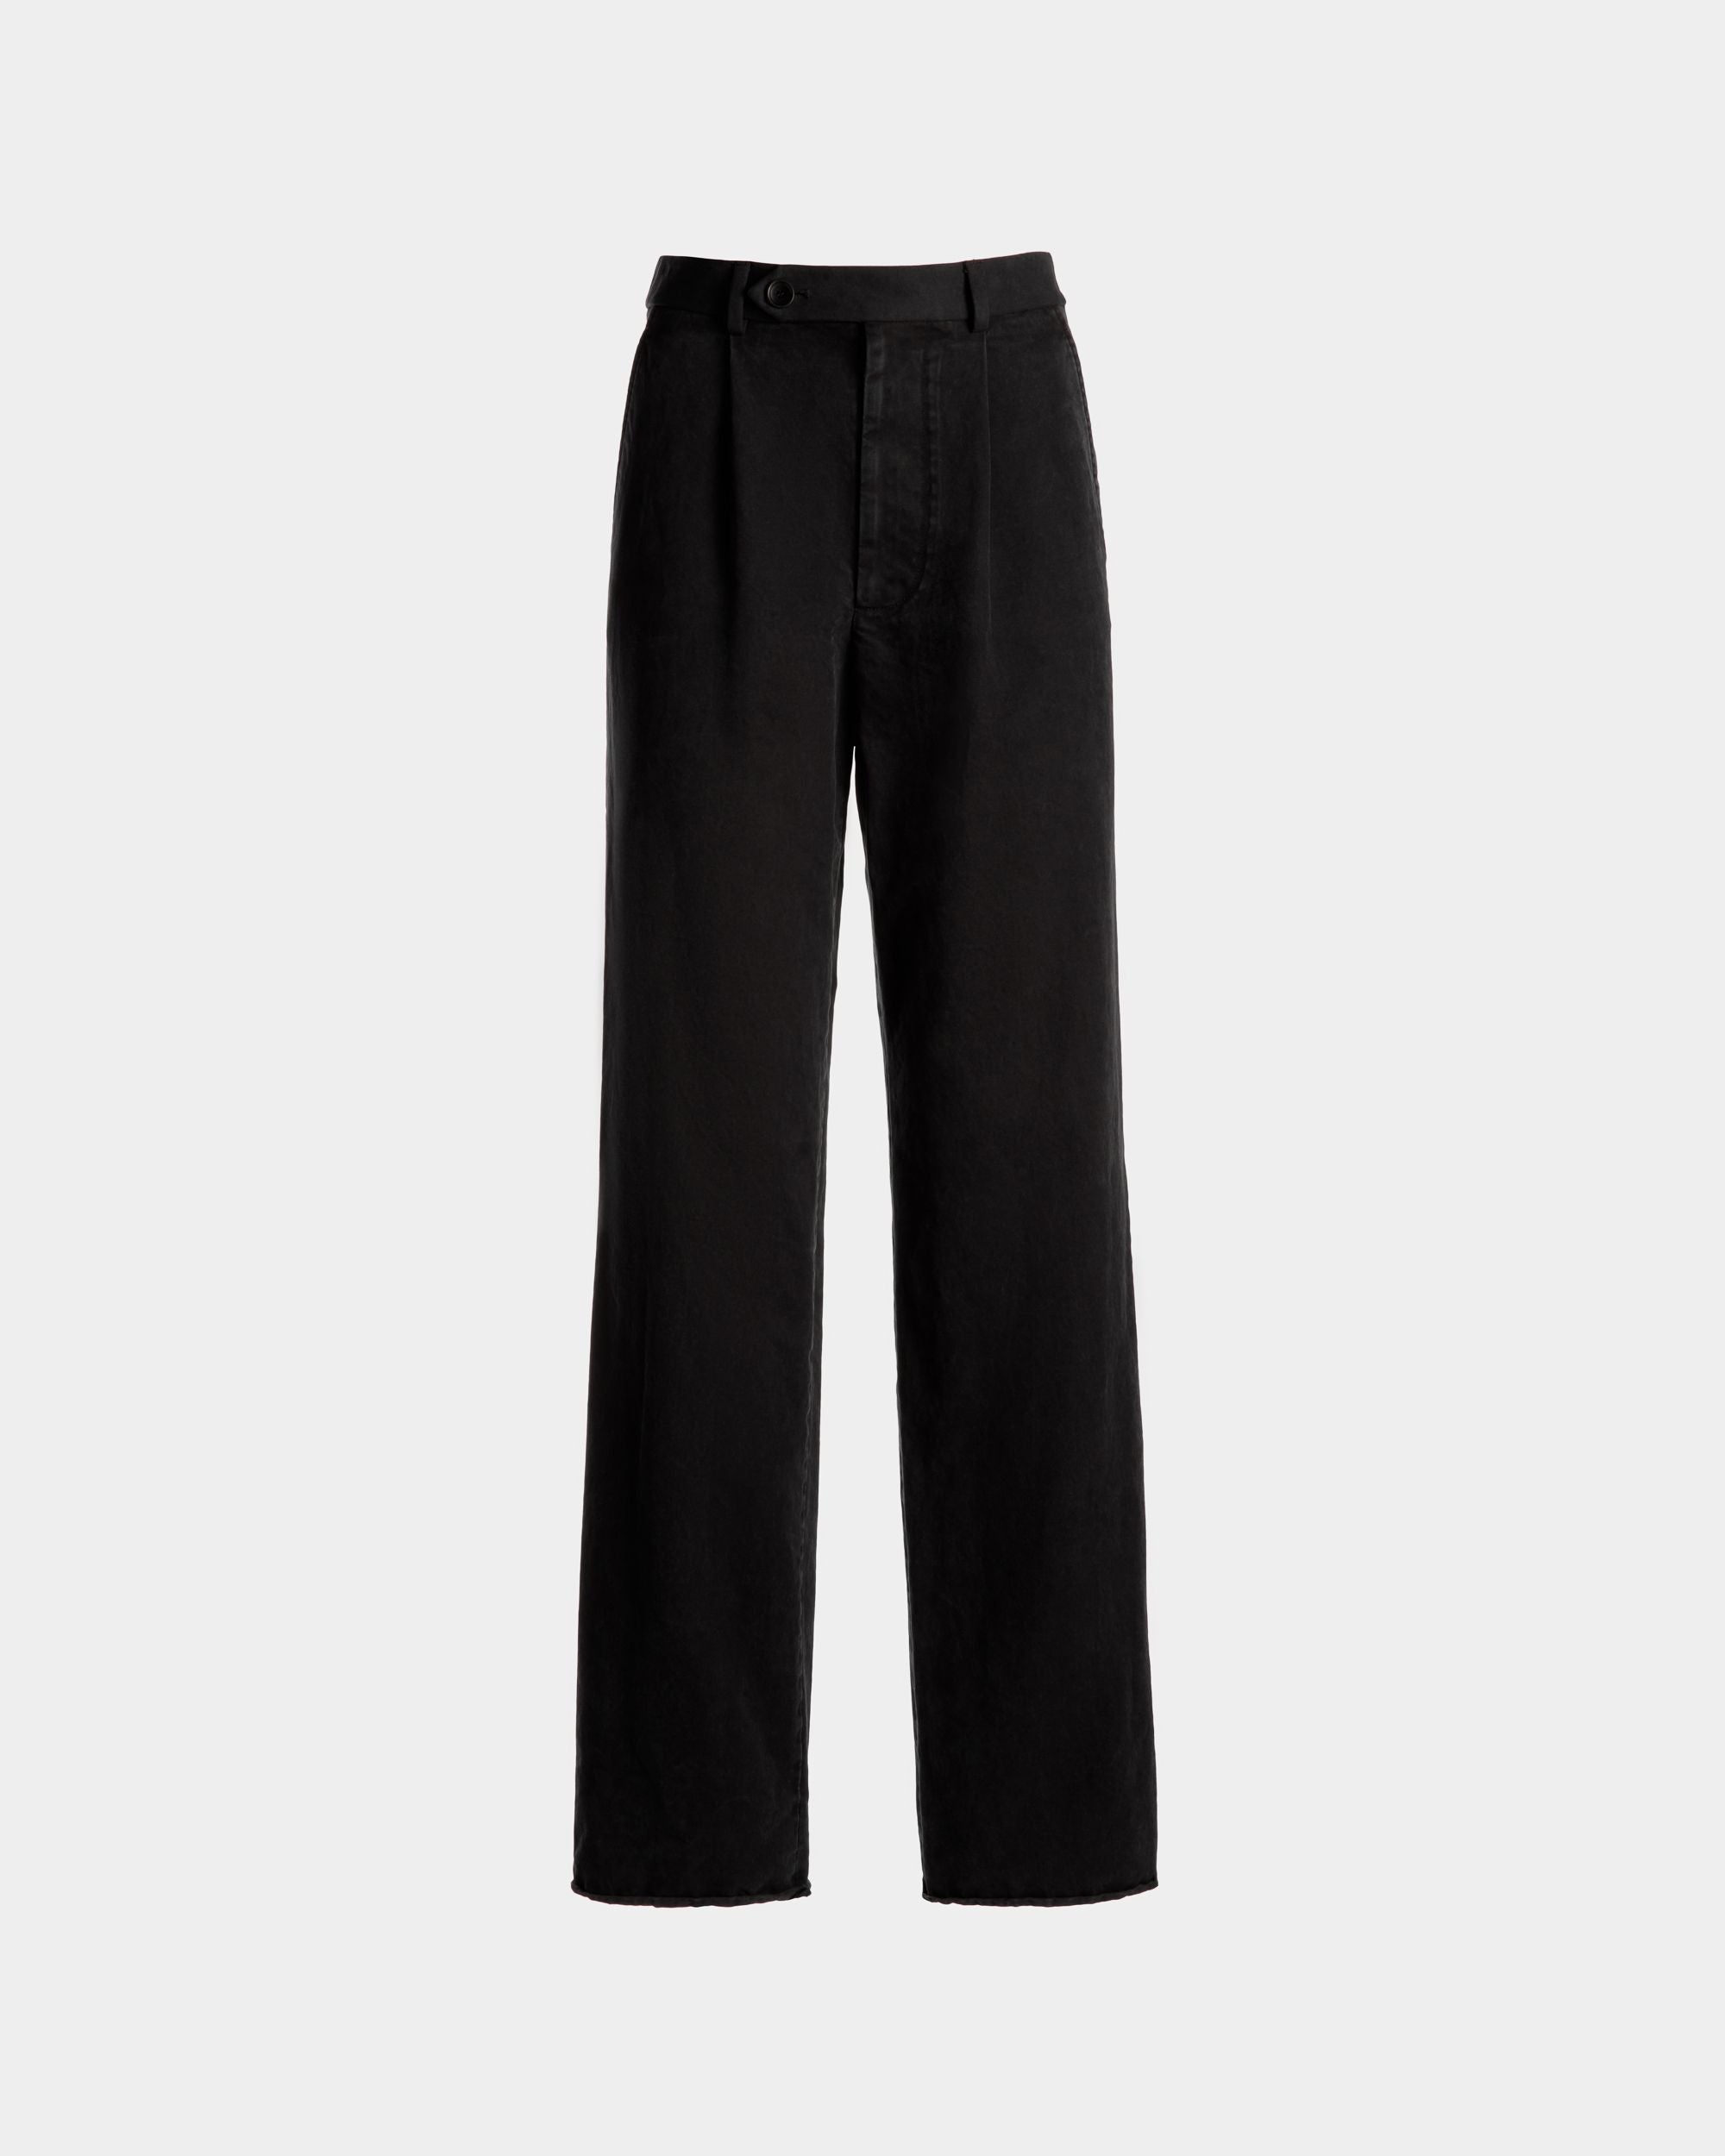 Pantalone con pince da donna in cotone lavato nero | Bally | Still Life Fronte